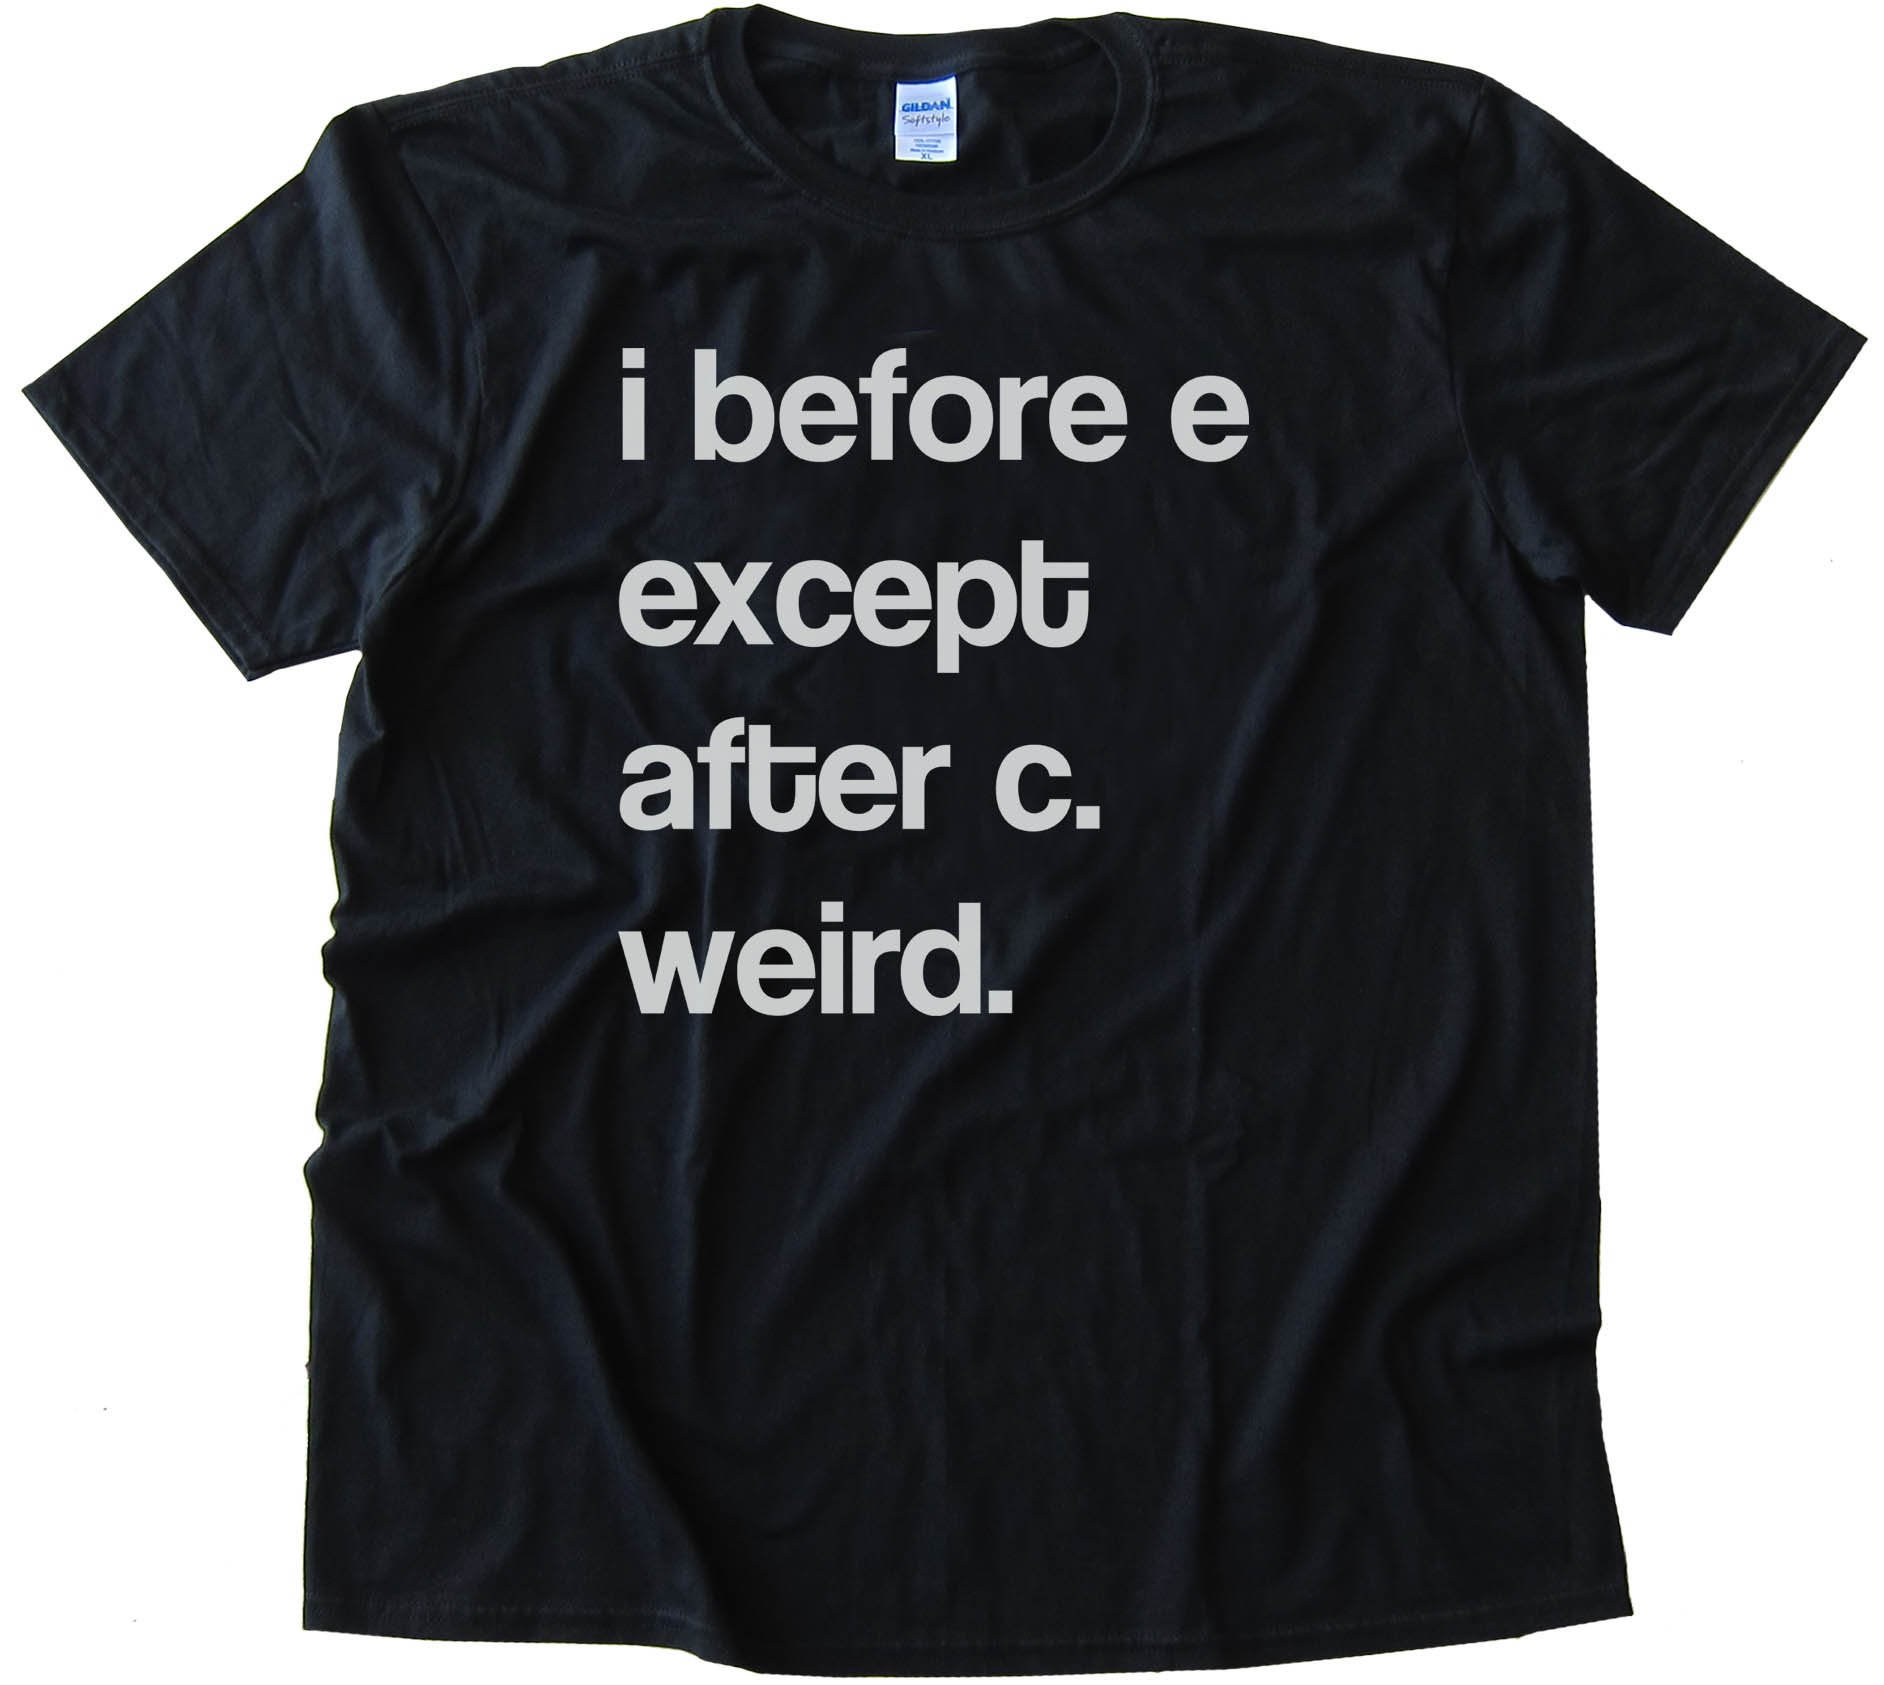 I Before E Except After C Weird. - Tee Shirt